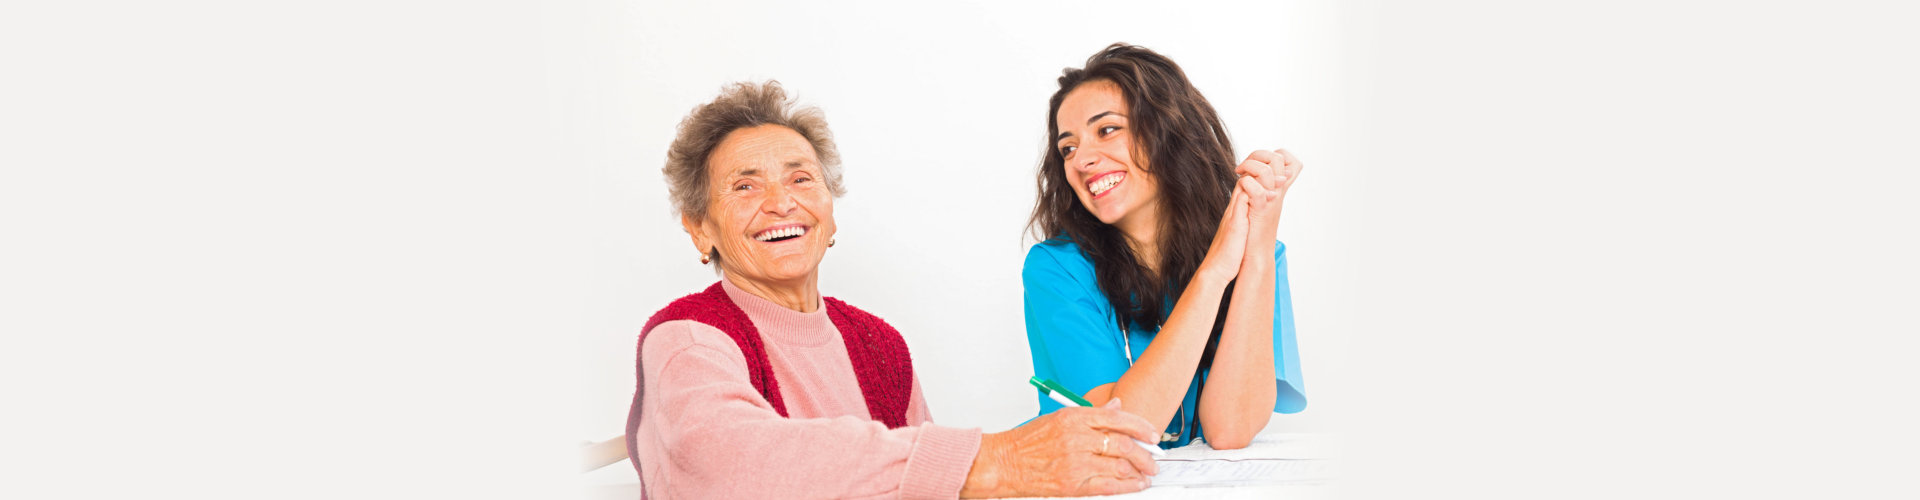 nurse and a caregiver smiling